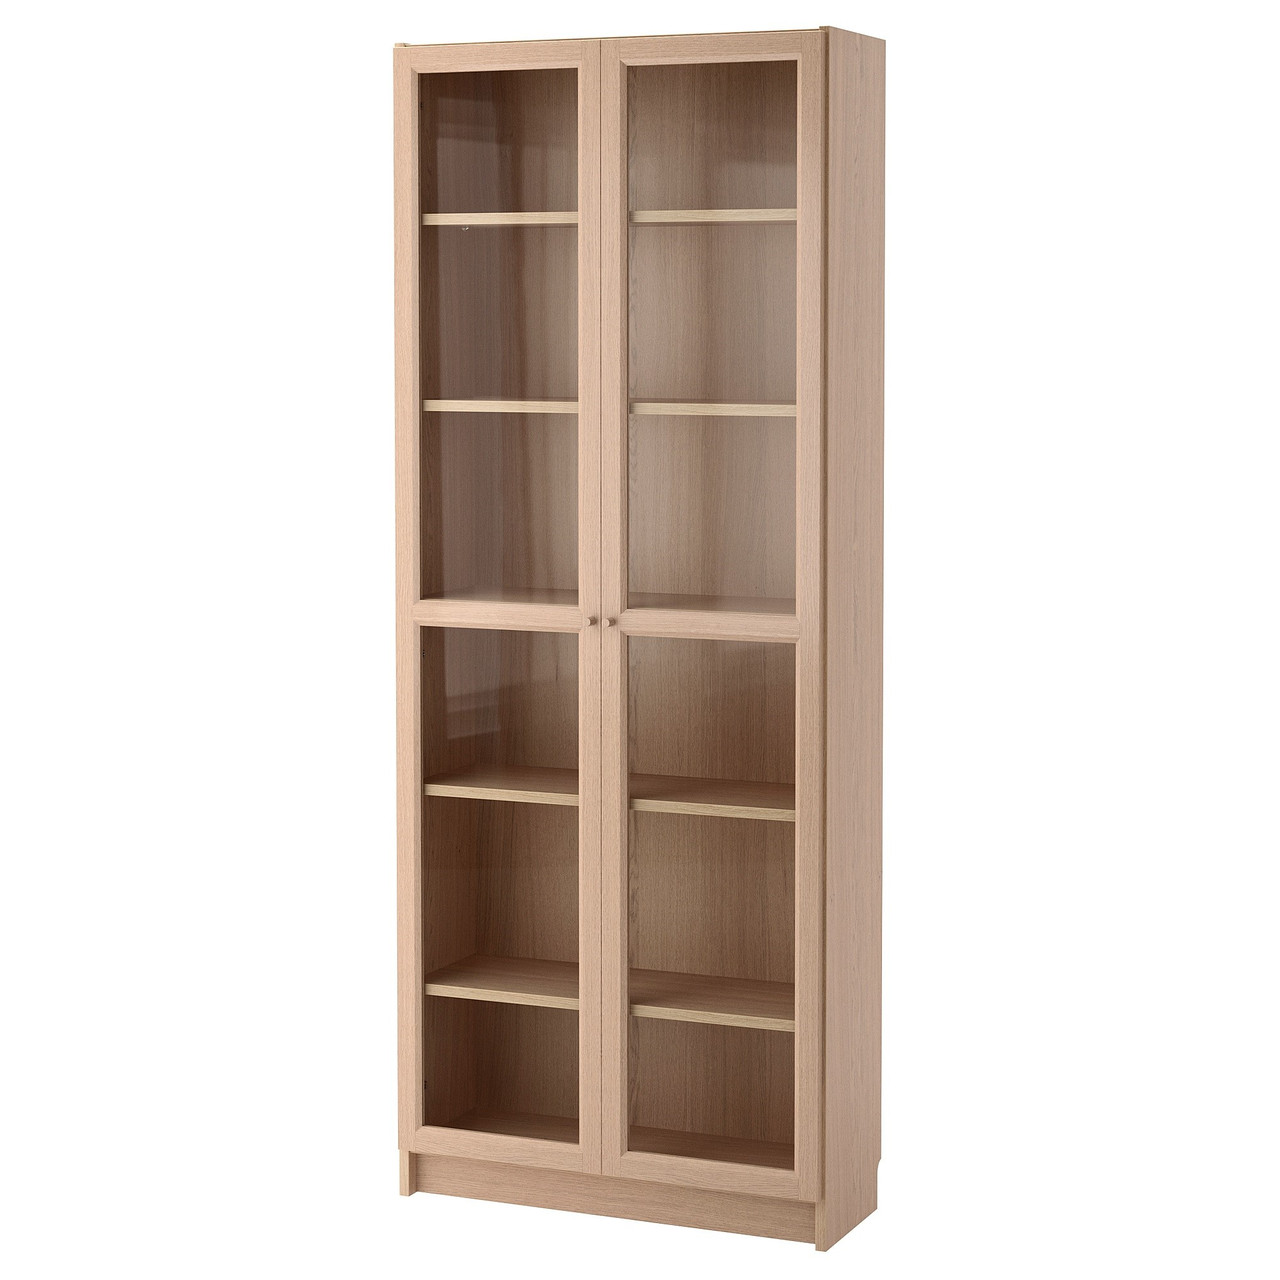 Шкаф книжный БИЛЛИ дубовый шпон 80x30x202 см ИКЕА, IKEA